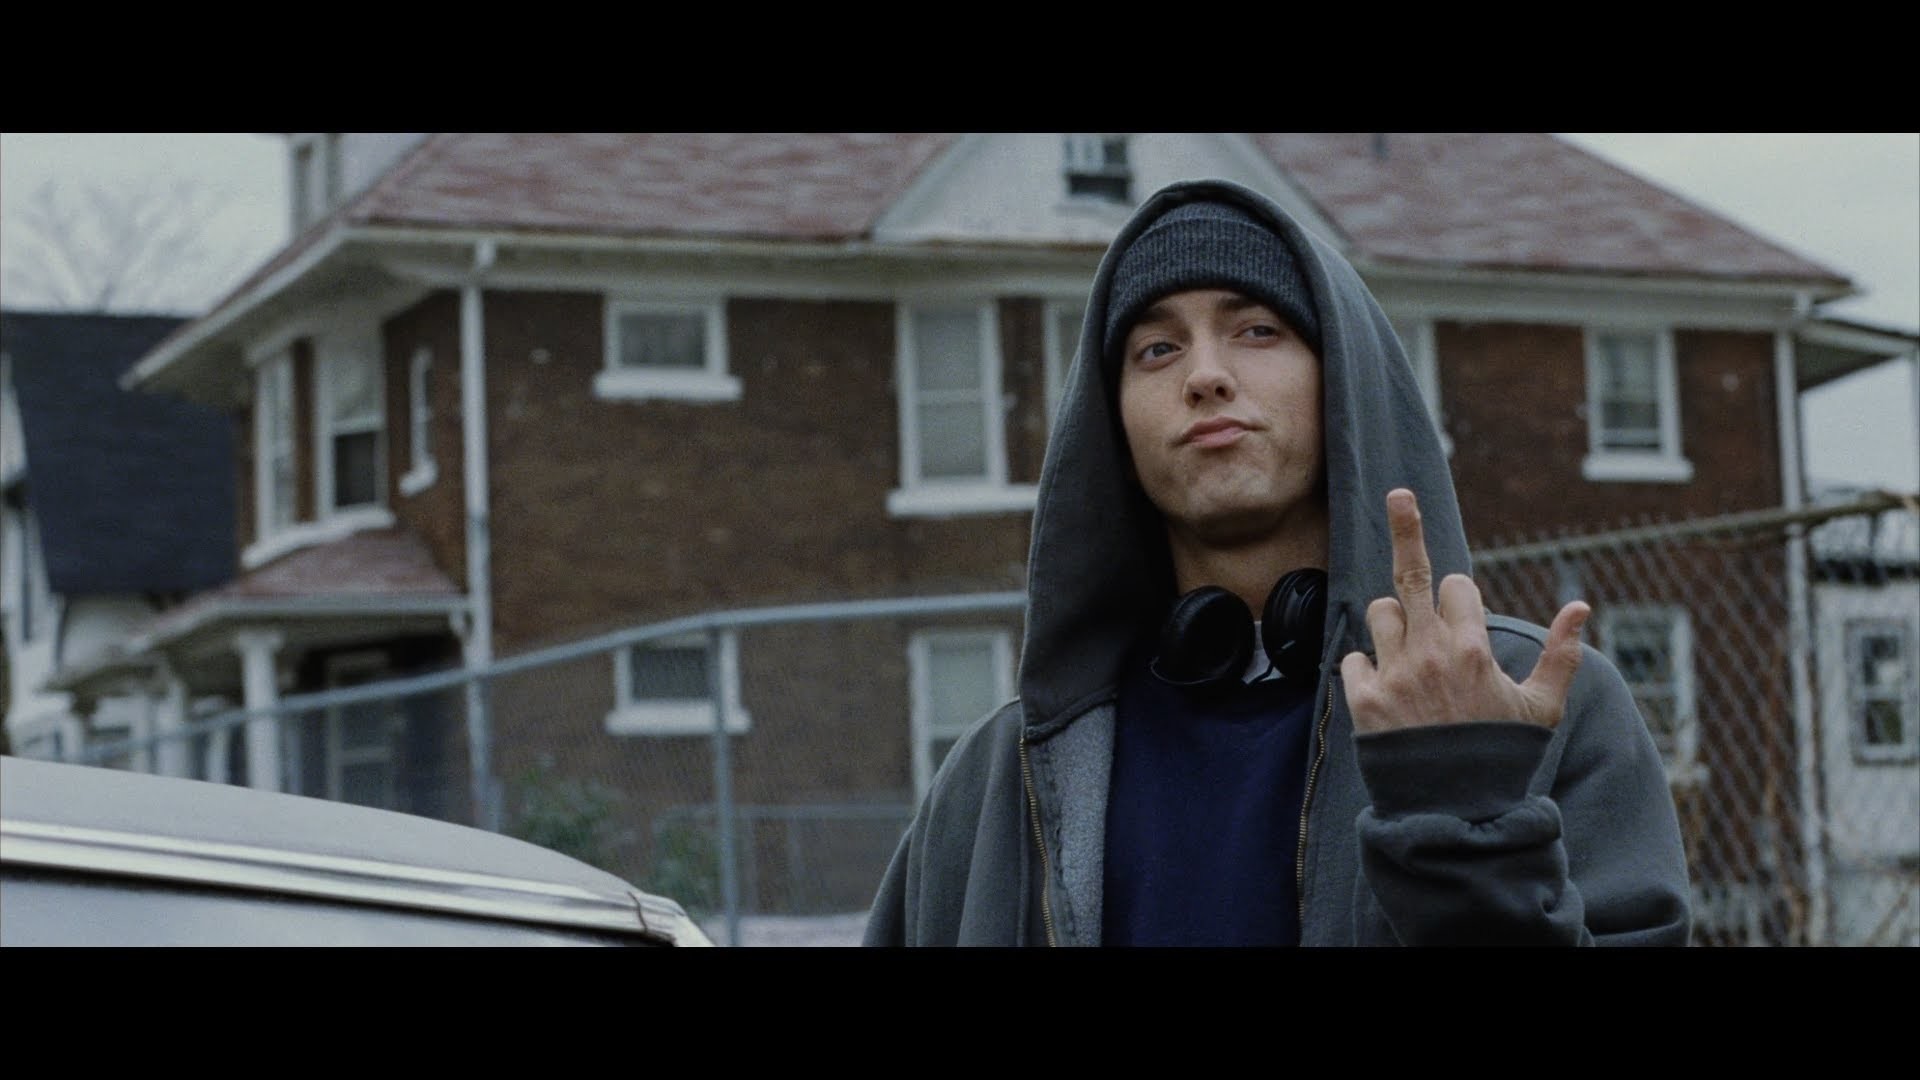 Eminem Images 8 Mile Wallpaper And Background Photos - Eminem Showing Middle Finger - HD Wallpaper 